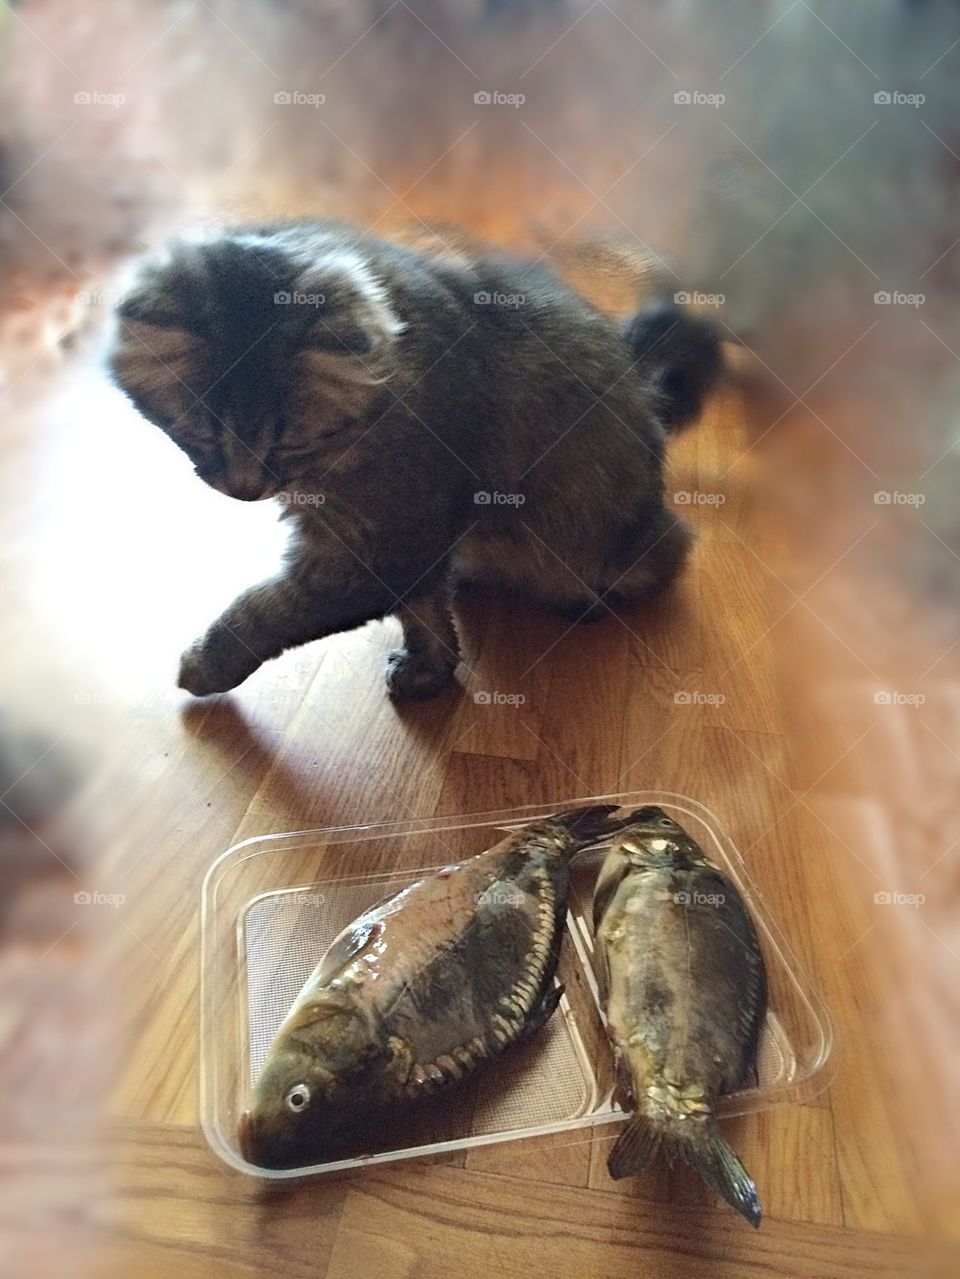 Cat going around the fish